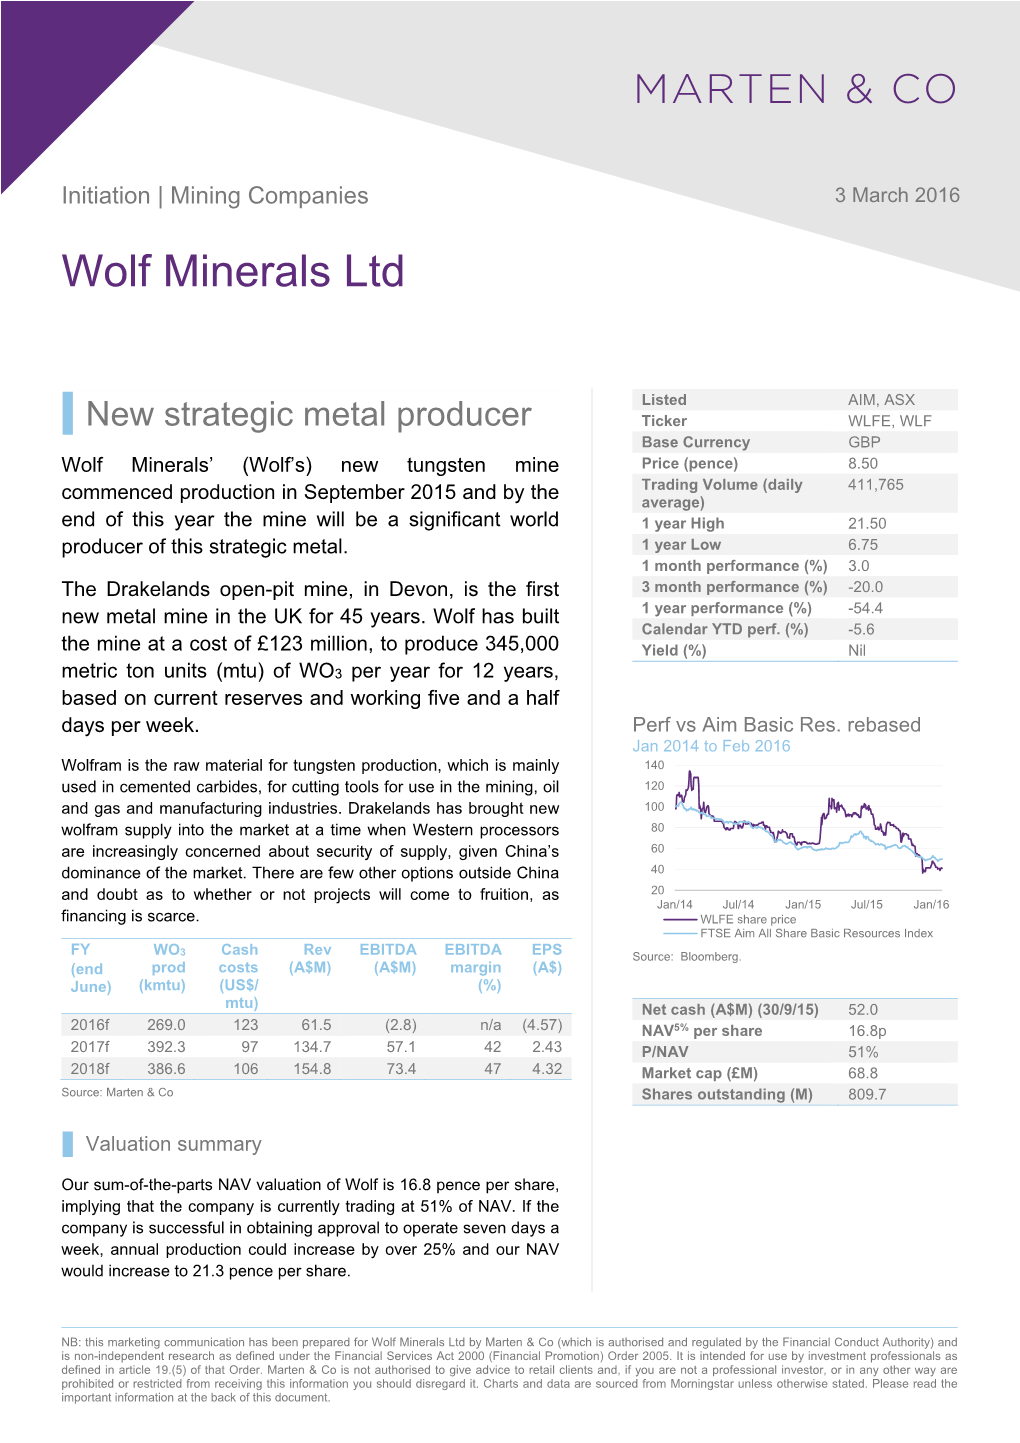 Wolf Minerals Ltd